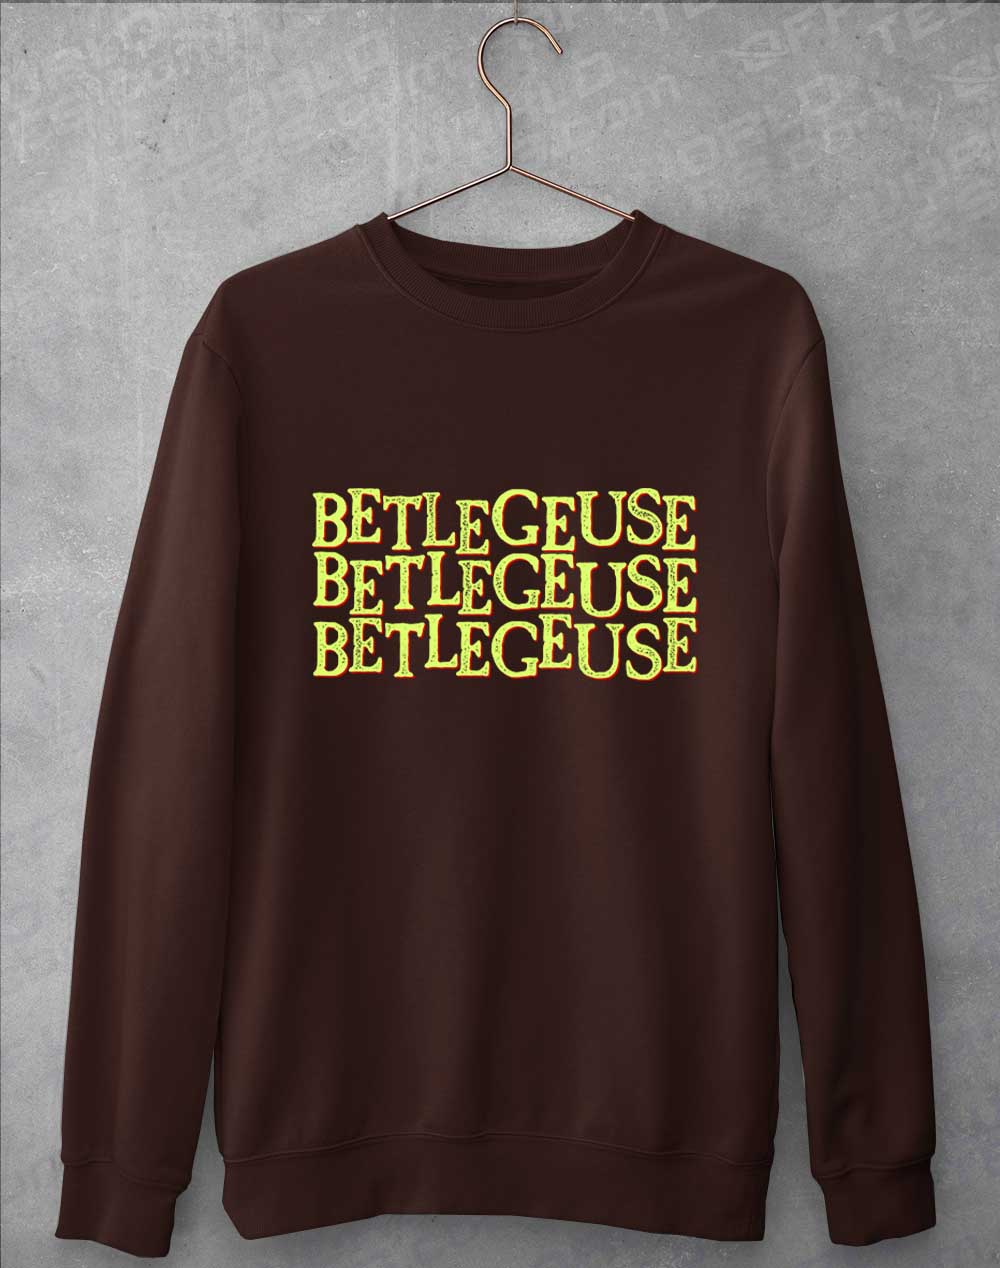 Hot Chocolate - Betelgeuse Betelgeuse Betelgeuse Sweatshirt